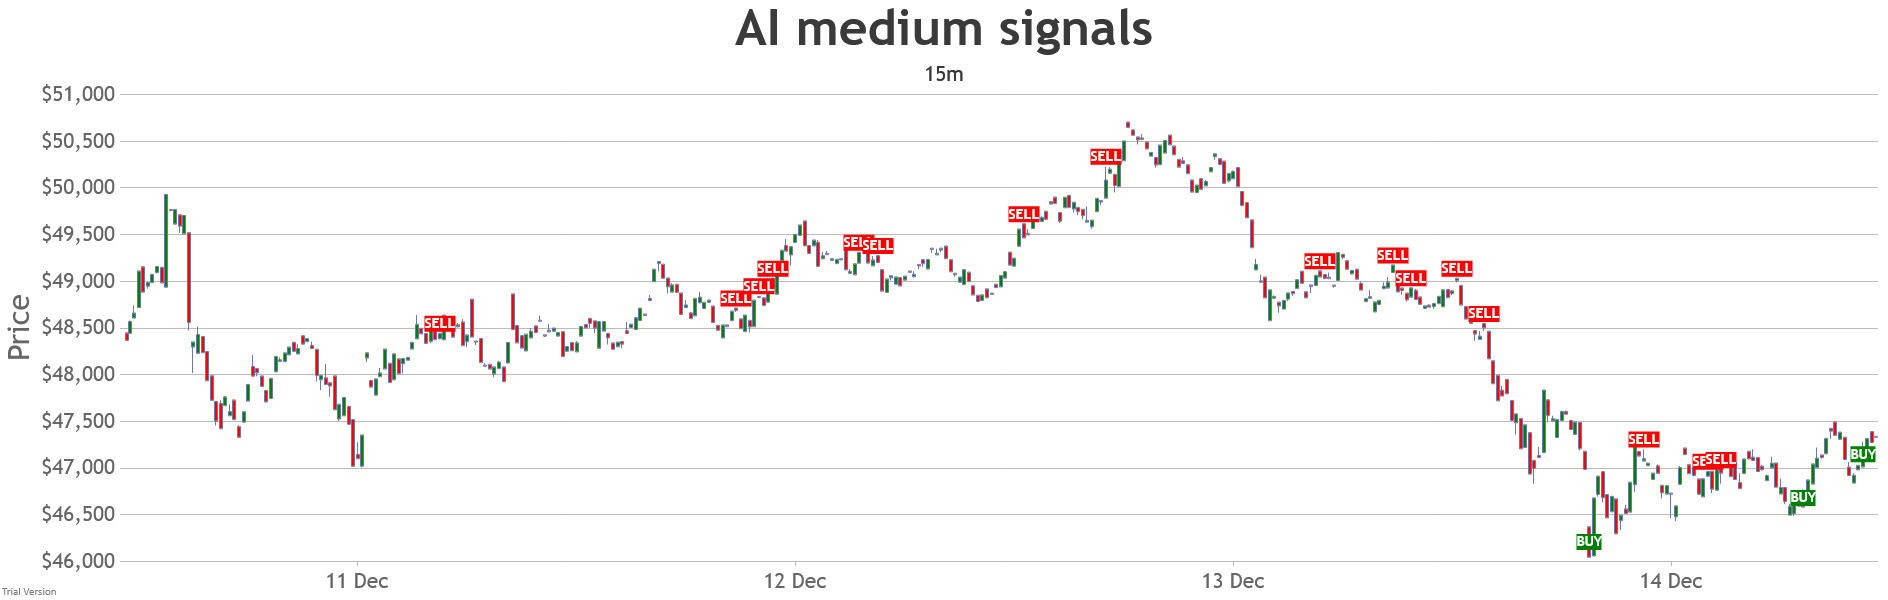 15min-short-range-medium-ai-signals